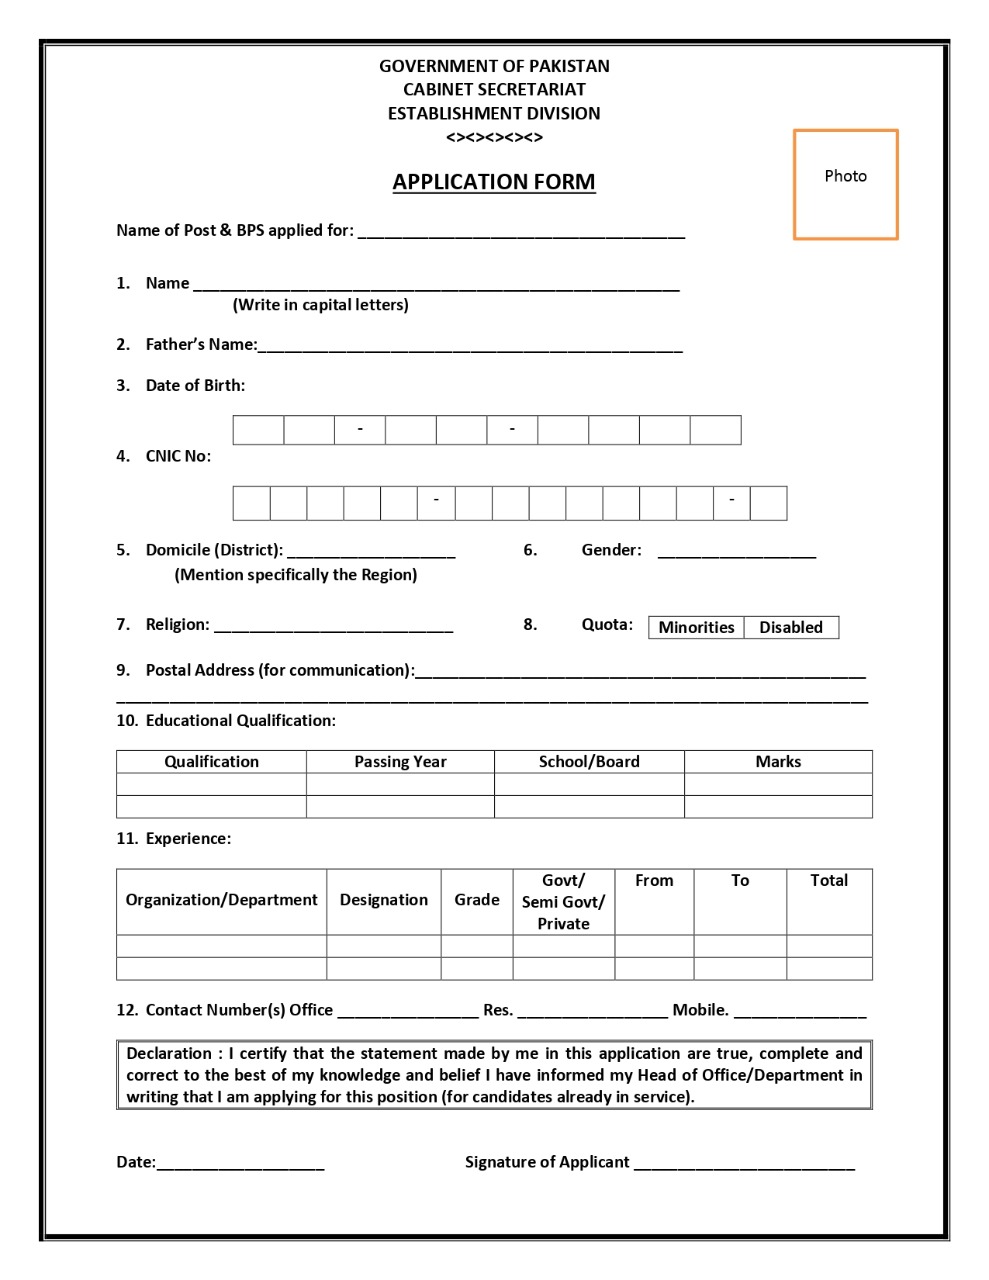 Establishment Division application form donwload now